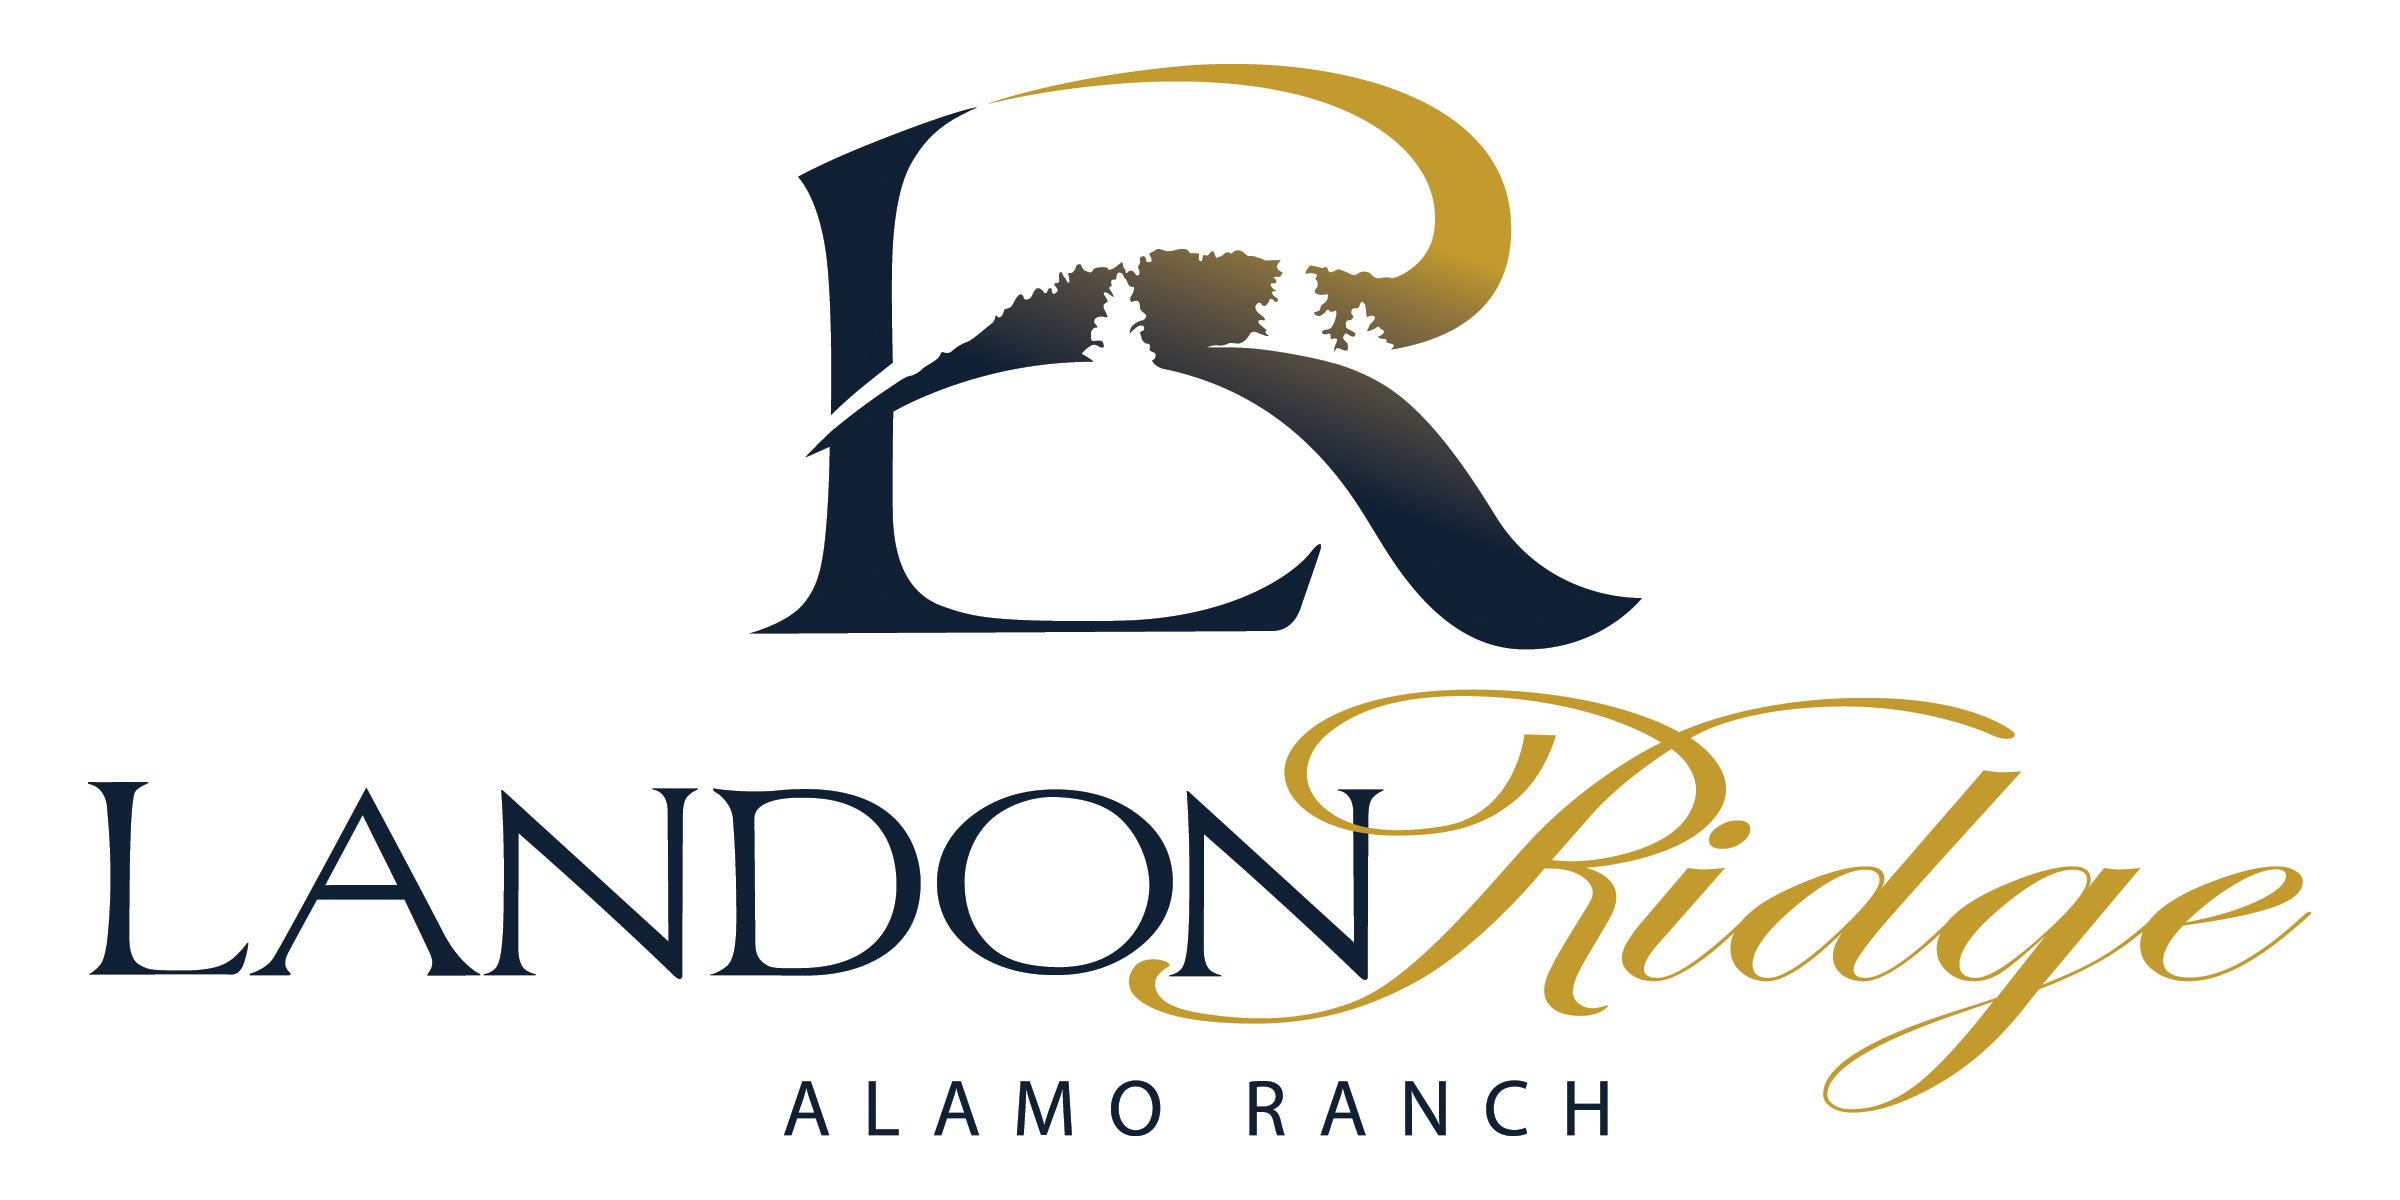 Landon Ridge - Alamo Ranch logo